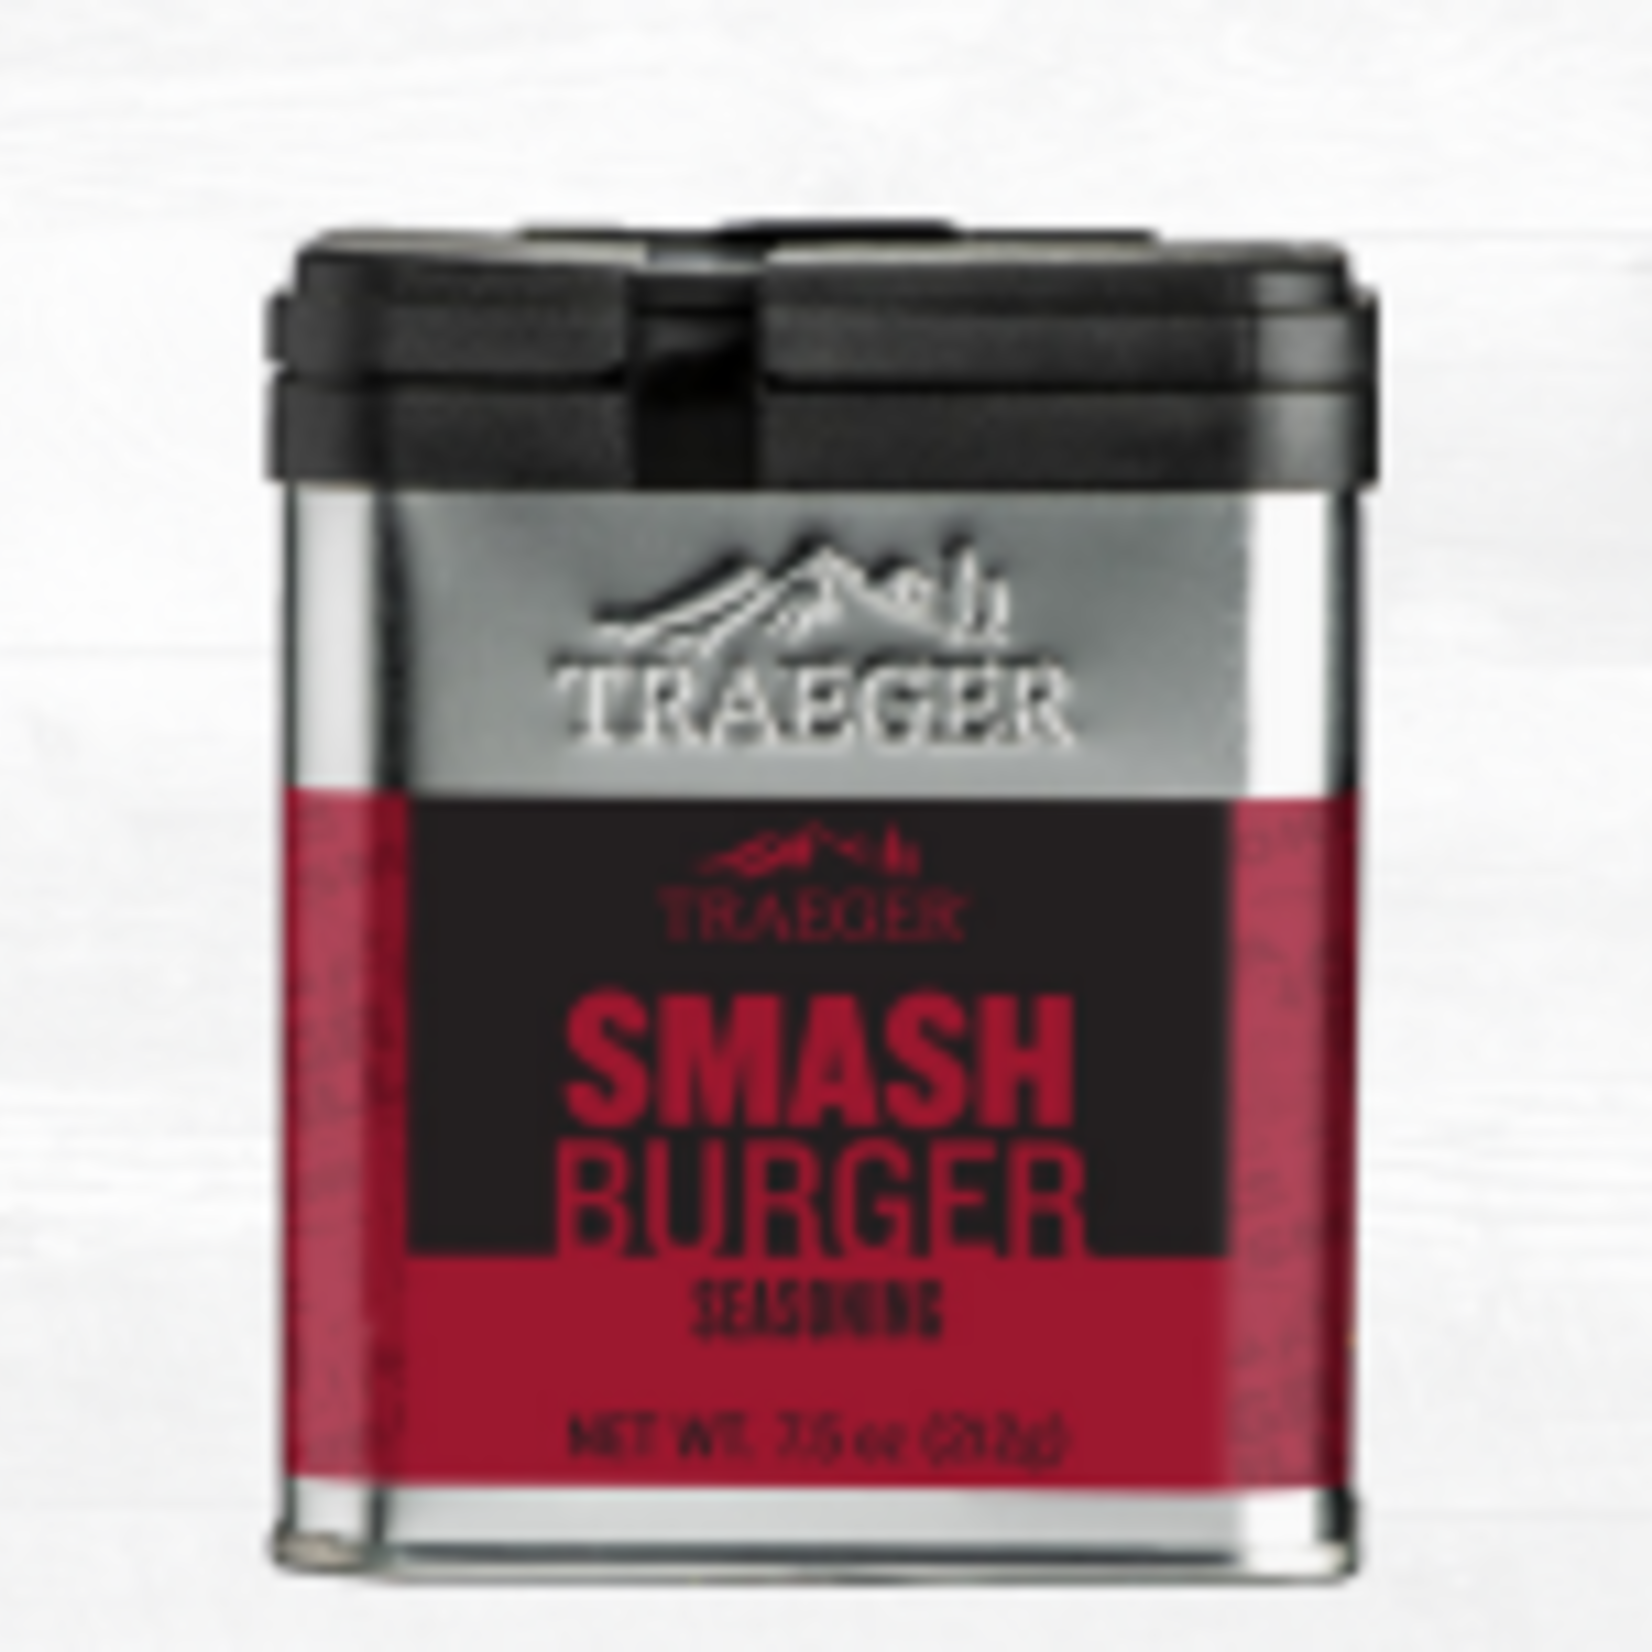 https://cdn.shoplightspeed.com/shops/631982/files/53218667/1652x1652x1/traeger-traeger-smash-burger-seasoning.jpg